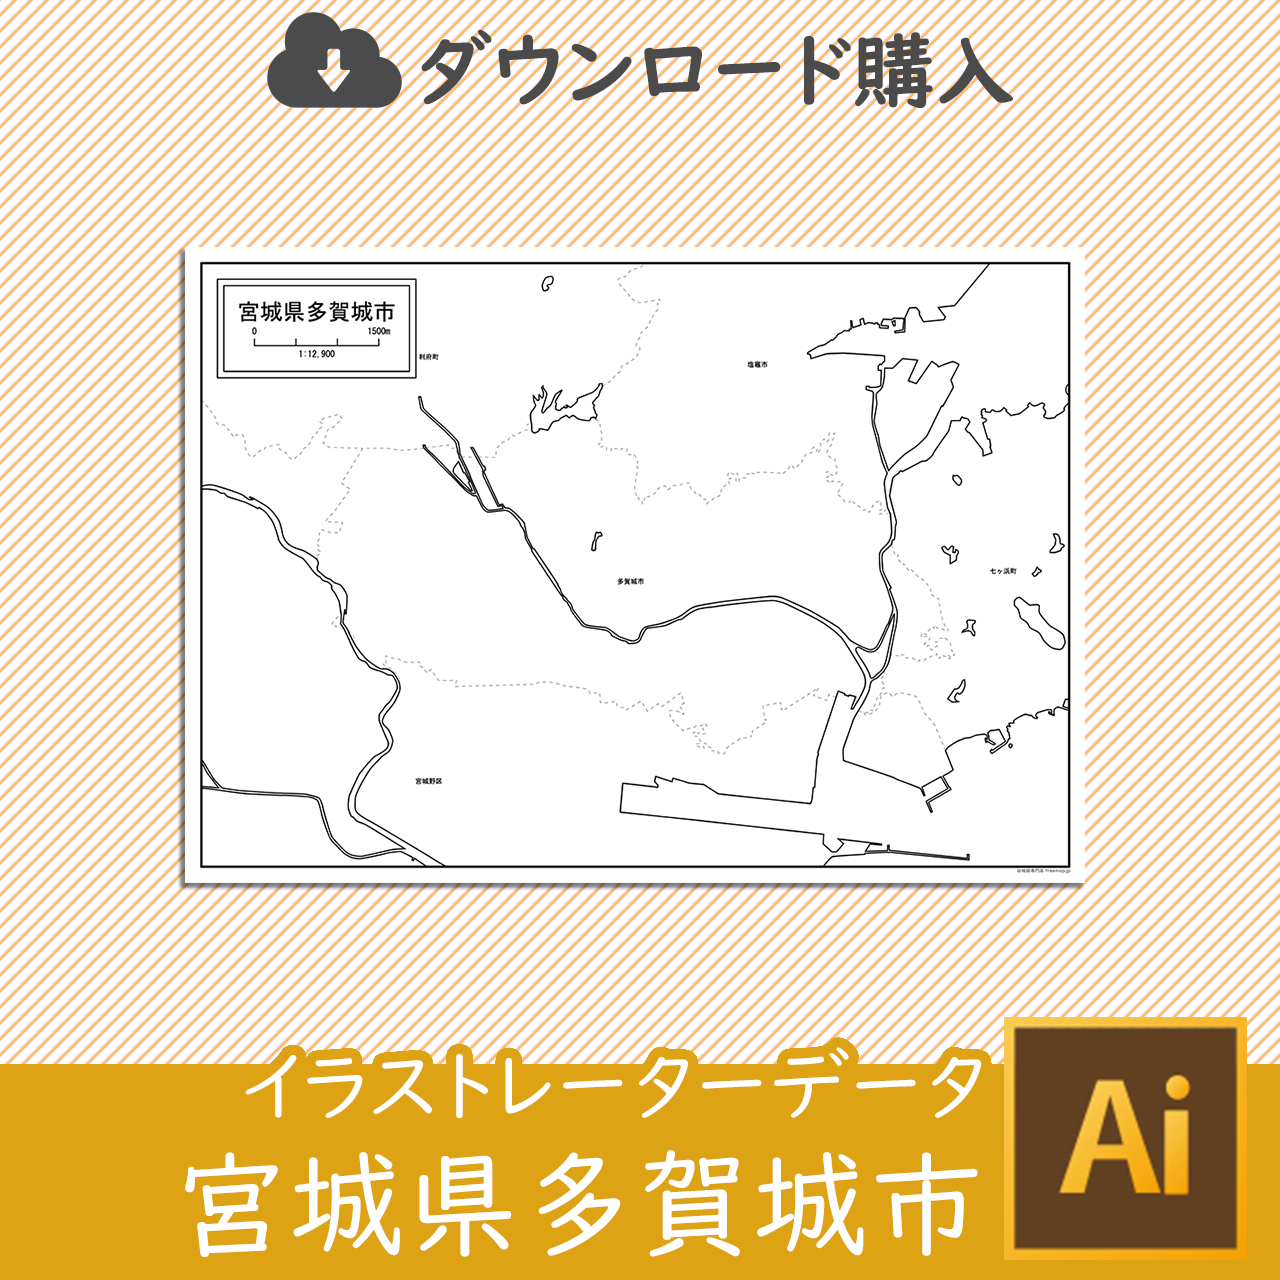 多賀城市のaiデータのサムネイル画像